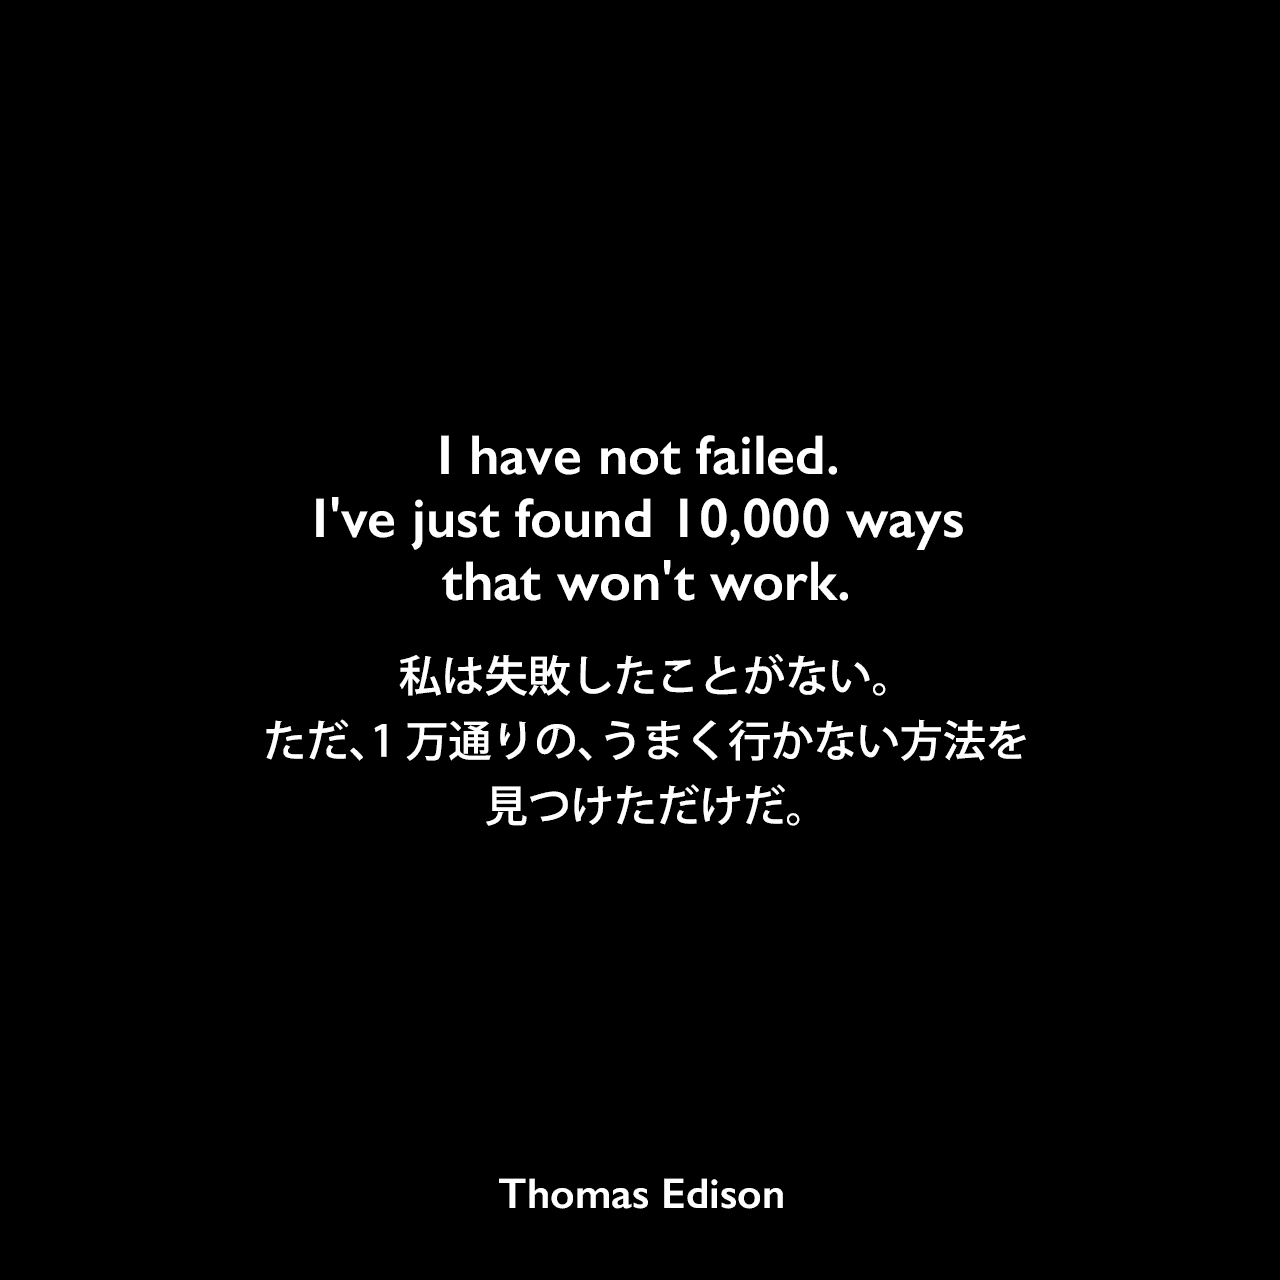 I have not failed. I've just found 10,000 ways that won't work.私は失敗したことがない。ただ、1万通りの、うまく行かない方法を見つけただけだ。Thomas Edison